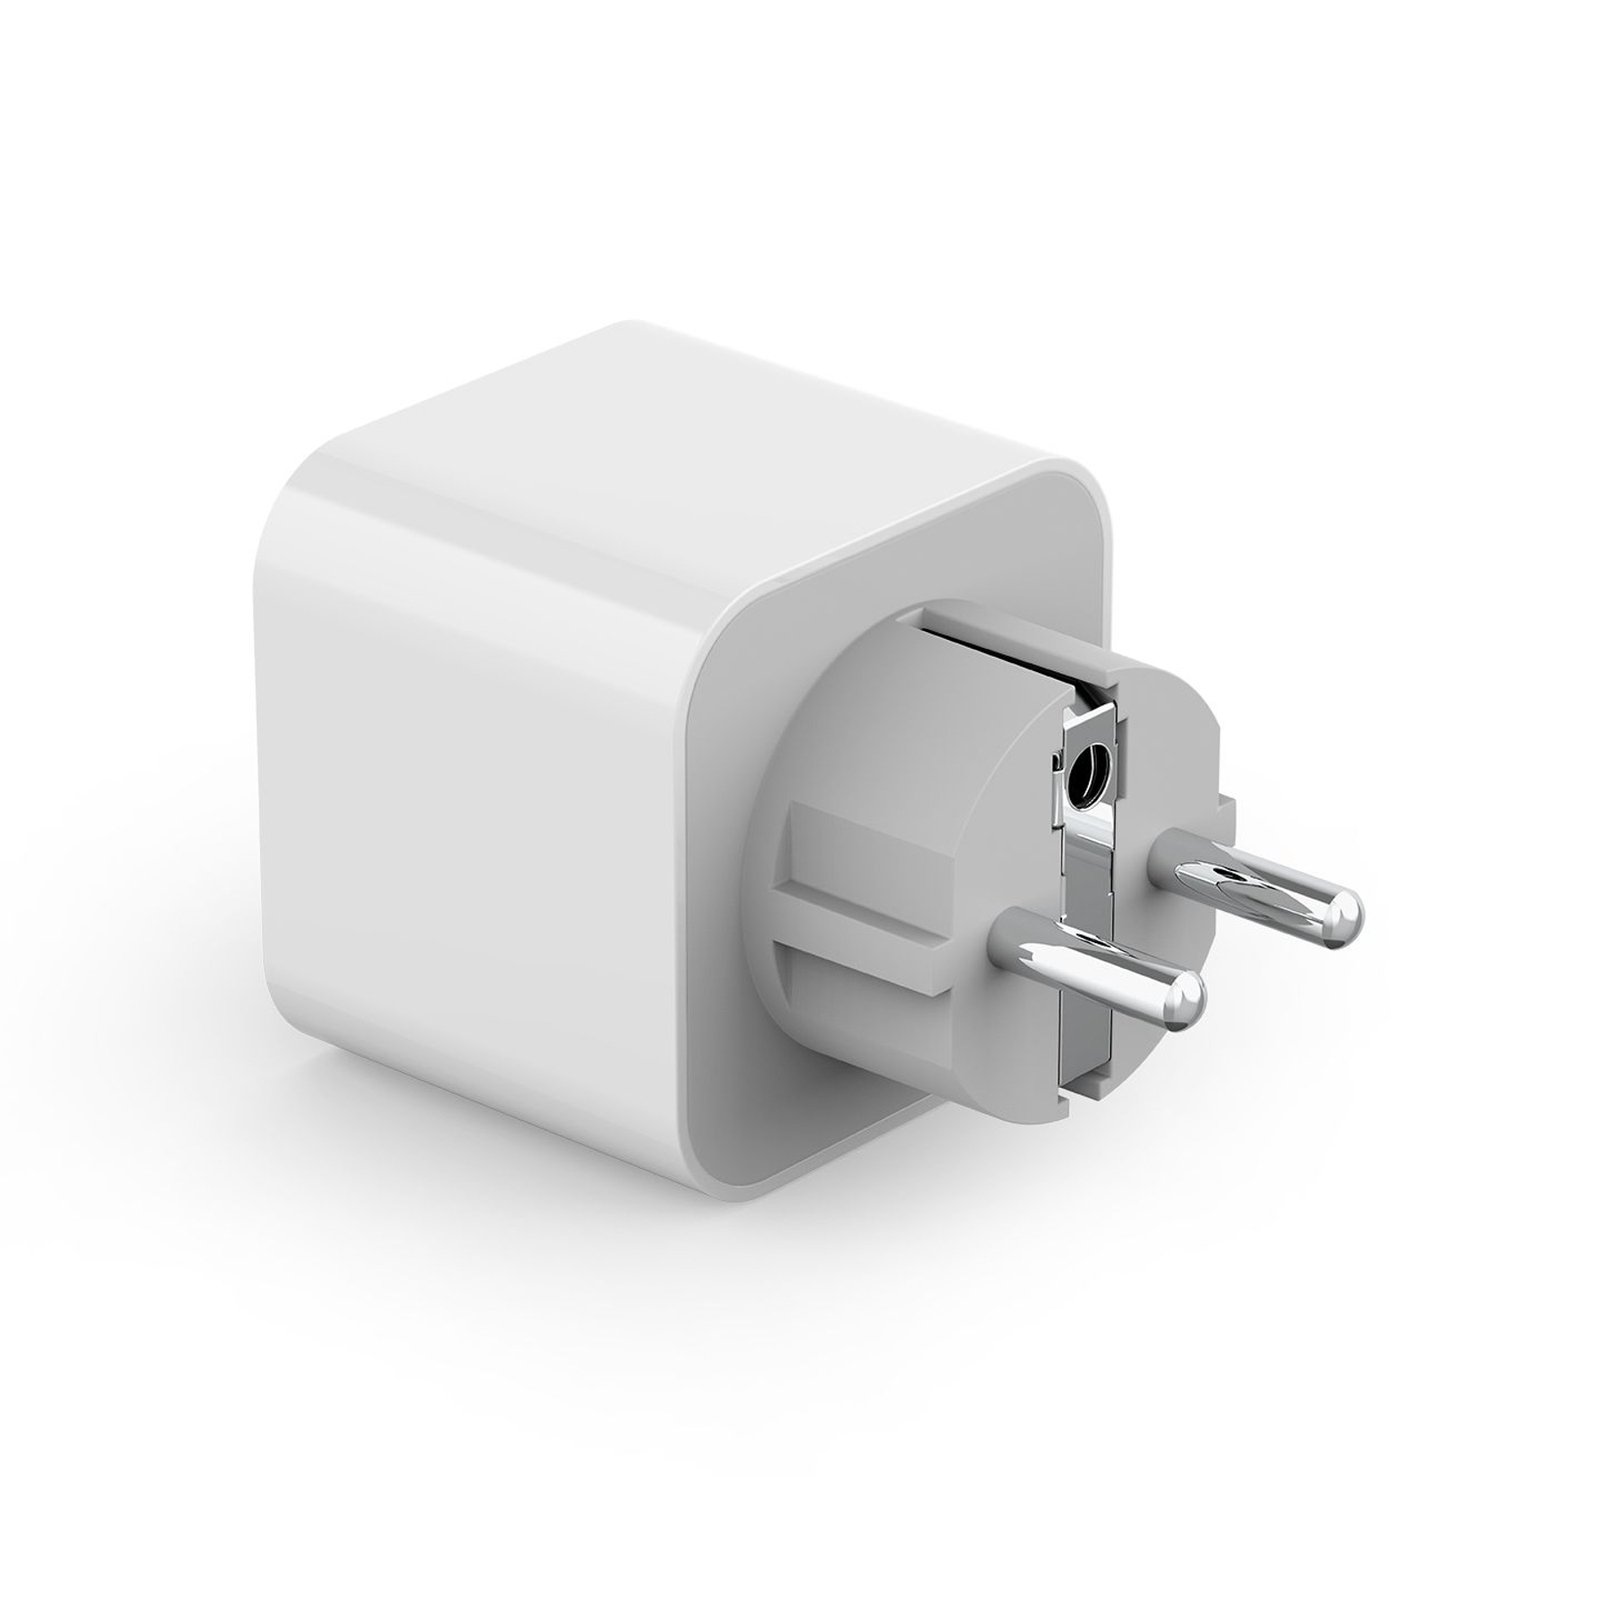 Innr Smart Plug SP 240 köztes aljzat alkalmazással vezérelhető